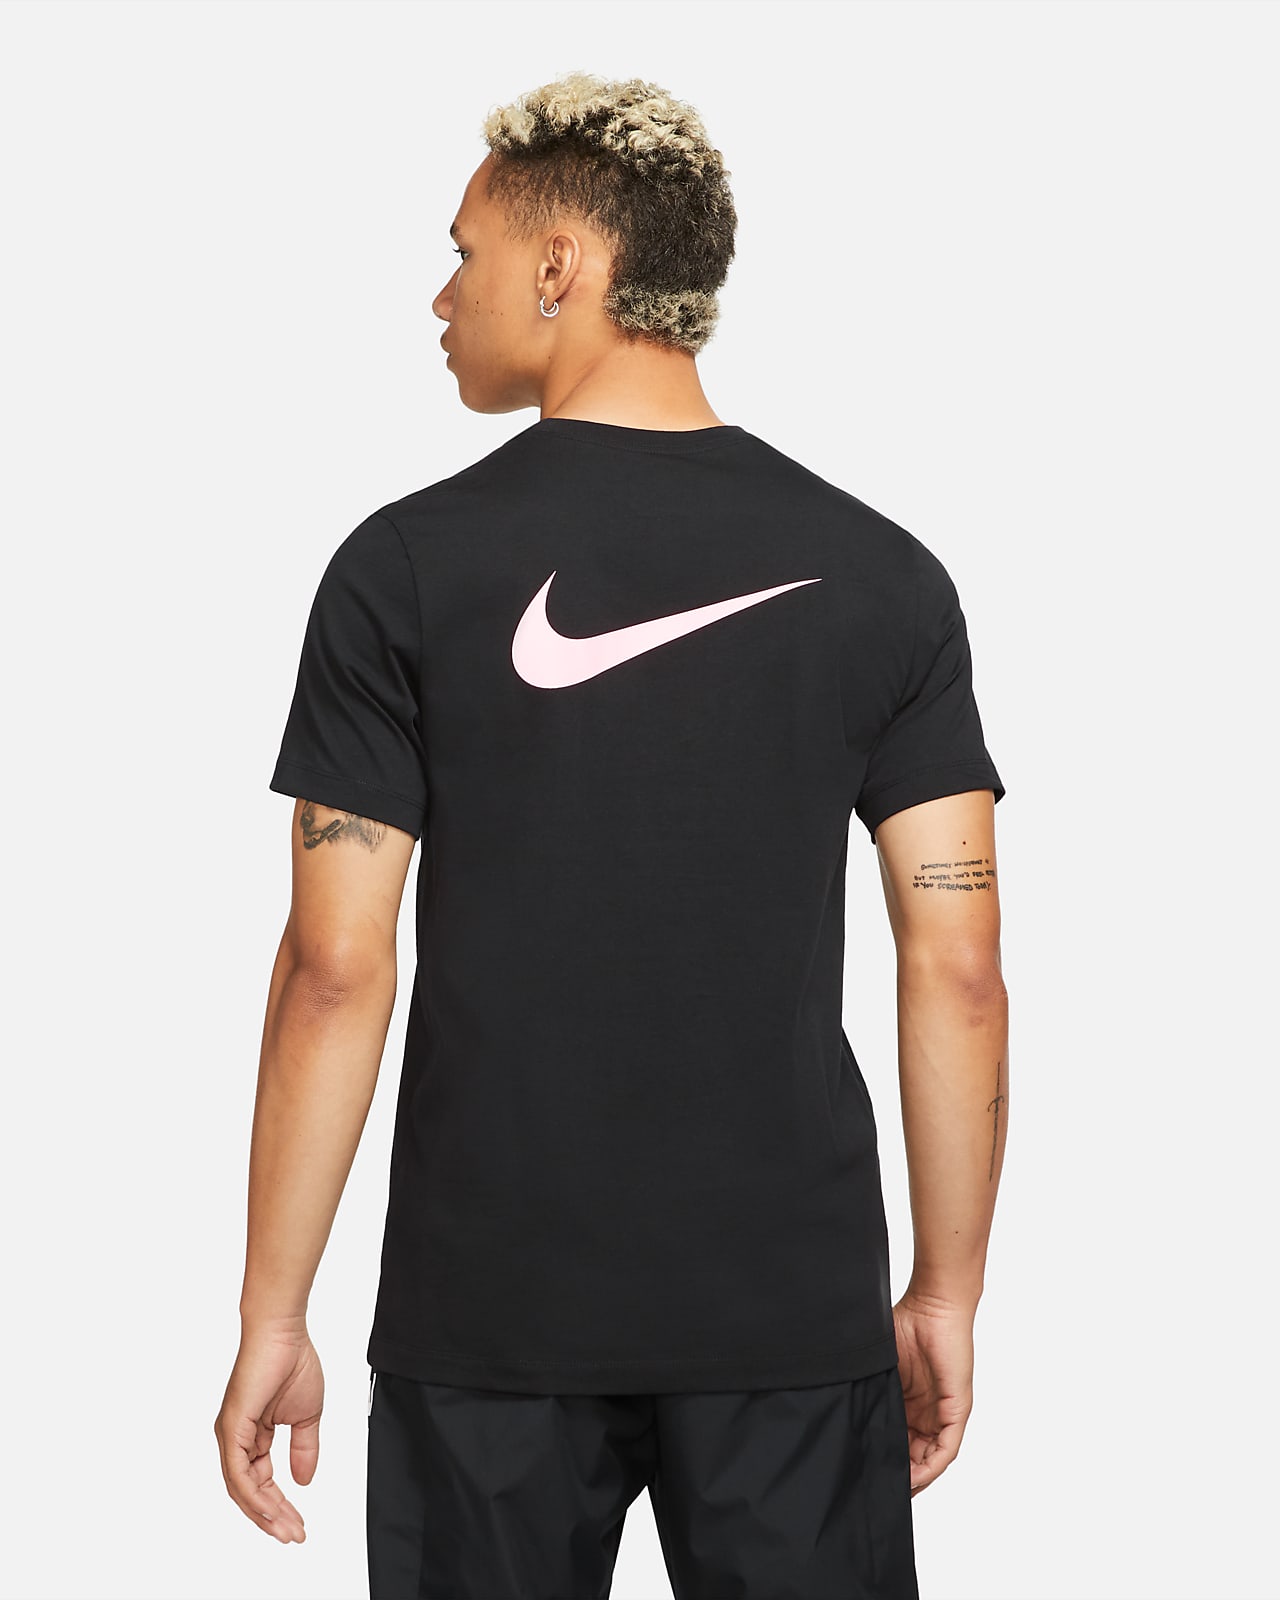 si Positivo Cintura París Saint-Germain Camiseta de fútbol - Hombre. Nike ES